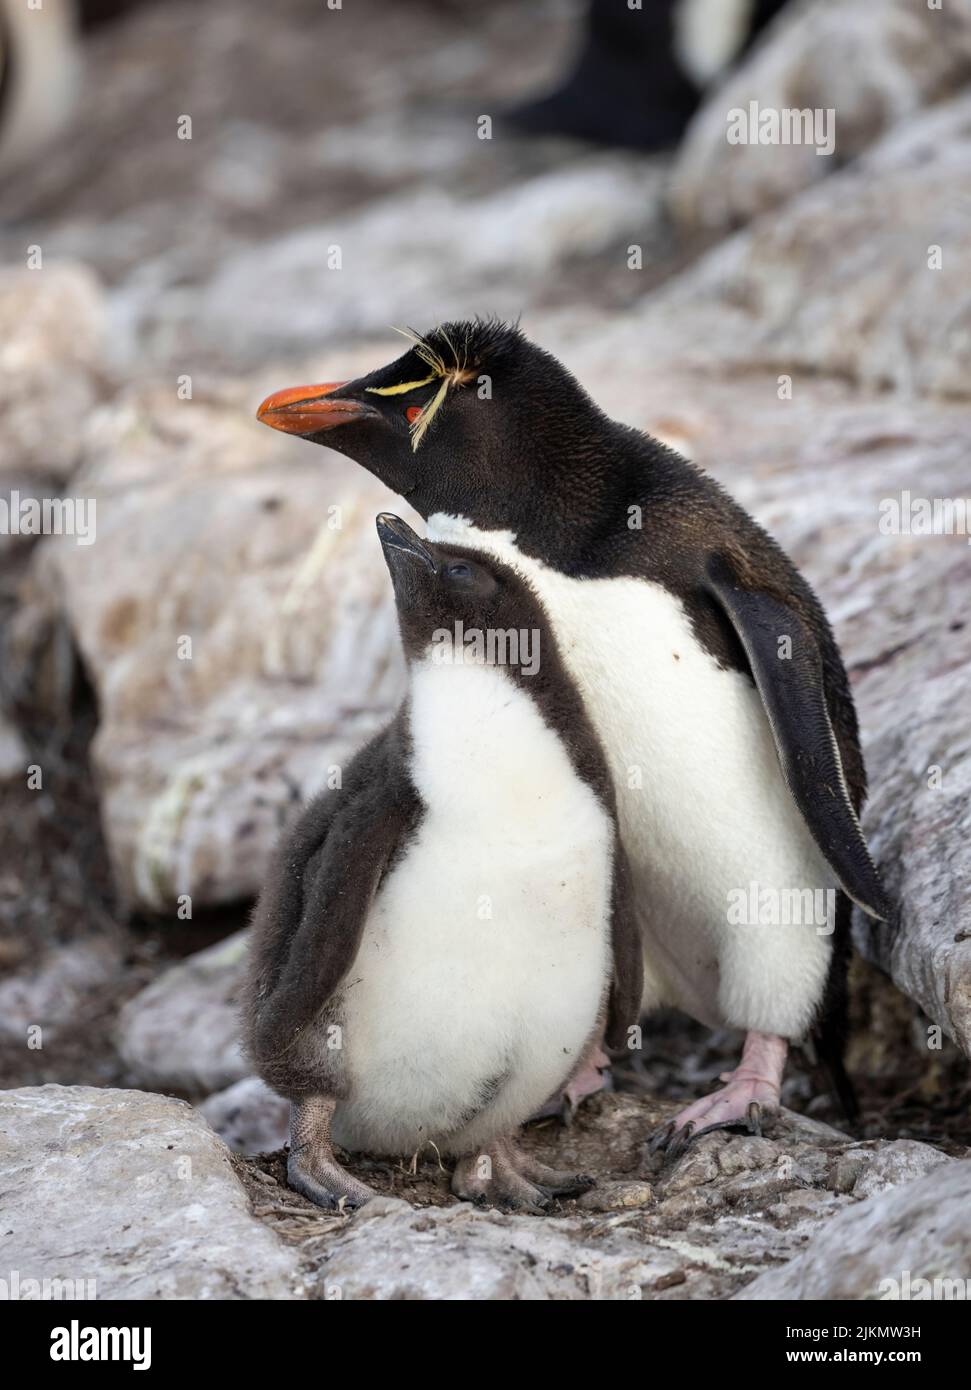 Le pingouin du sud (Eudyptes chrysocome) est un pingouin à crête fougueux. Image prise dans les îles Falkland Banque D'Images